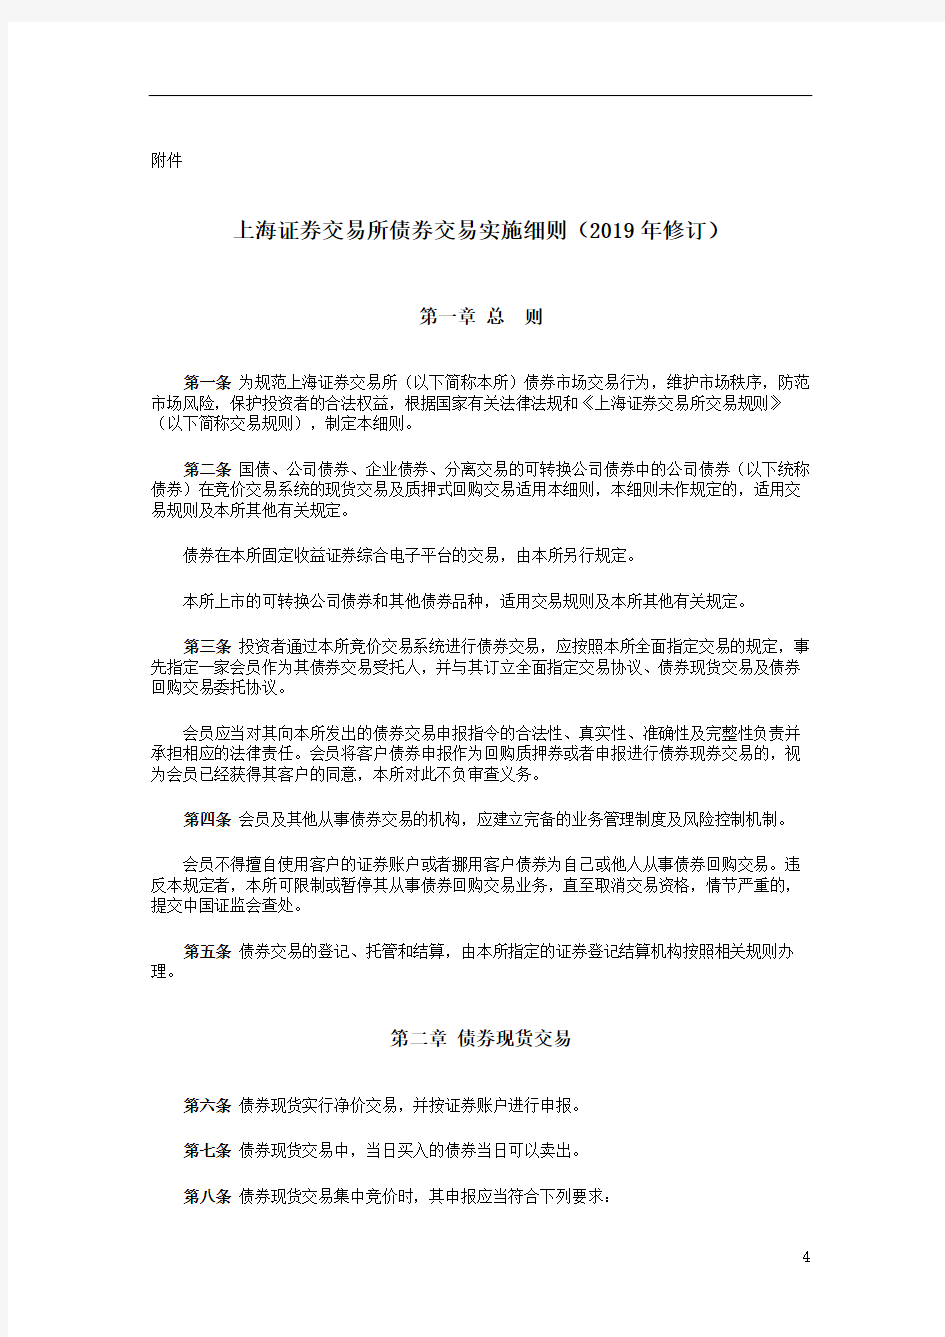 上海证券交易所债券交易实施细则(2019年修订)